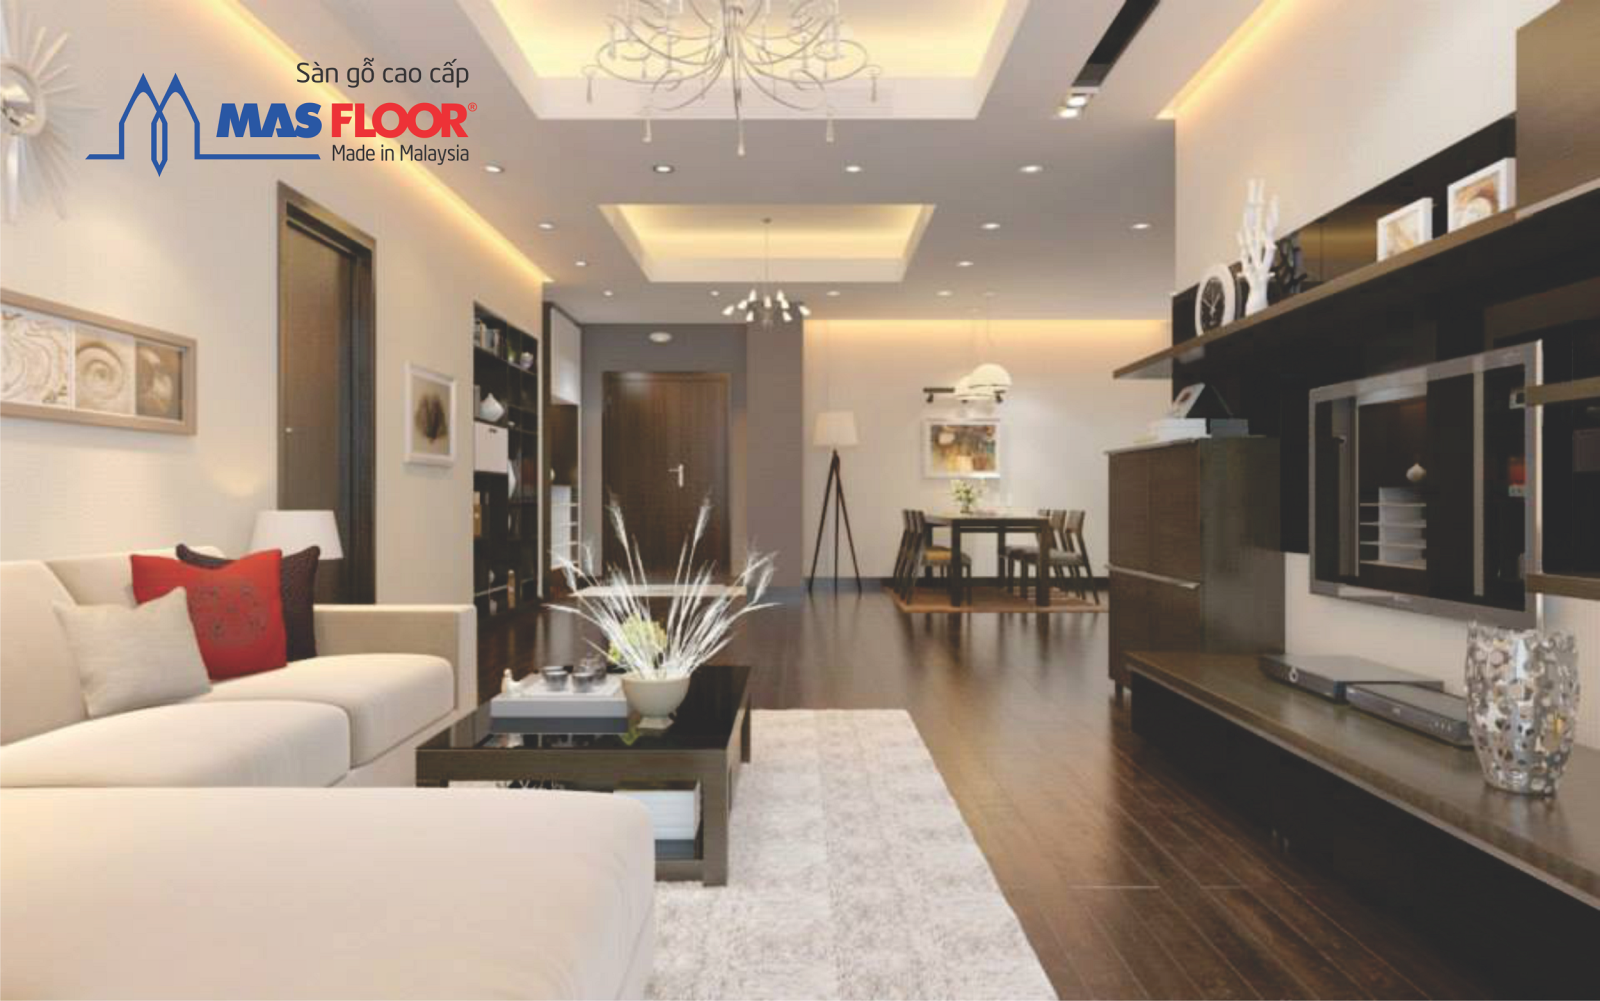 Sàn gỗ Masfloor chất lượng vượt trội, tính thẩm mỹ cao thích hợp cho thiết kế nhà đồ nội thất hiện đại